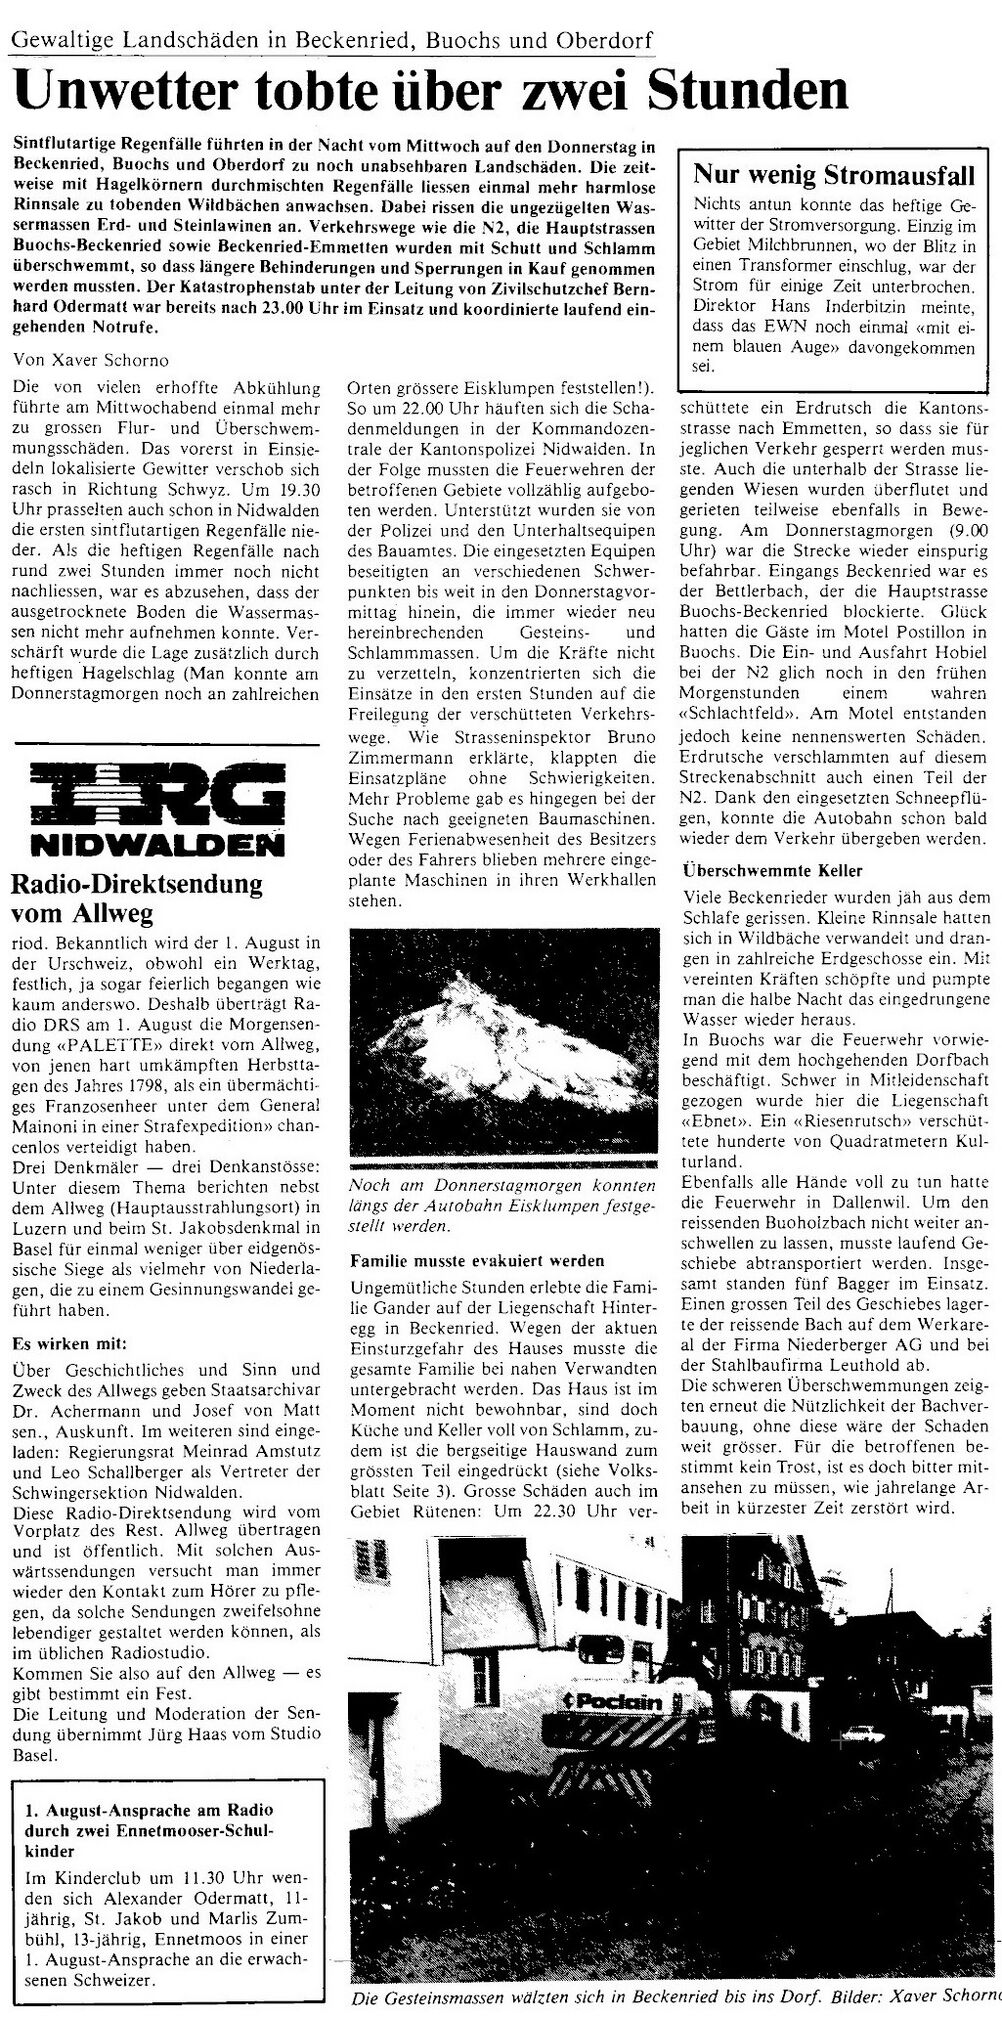 19840725 01 Flood Gersau SZ nidwaldner Volksblatt 28.07.84.jpg